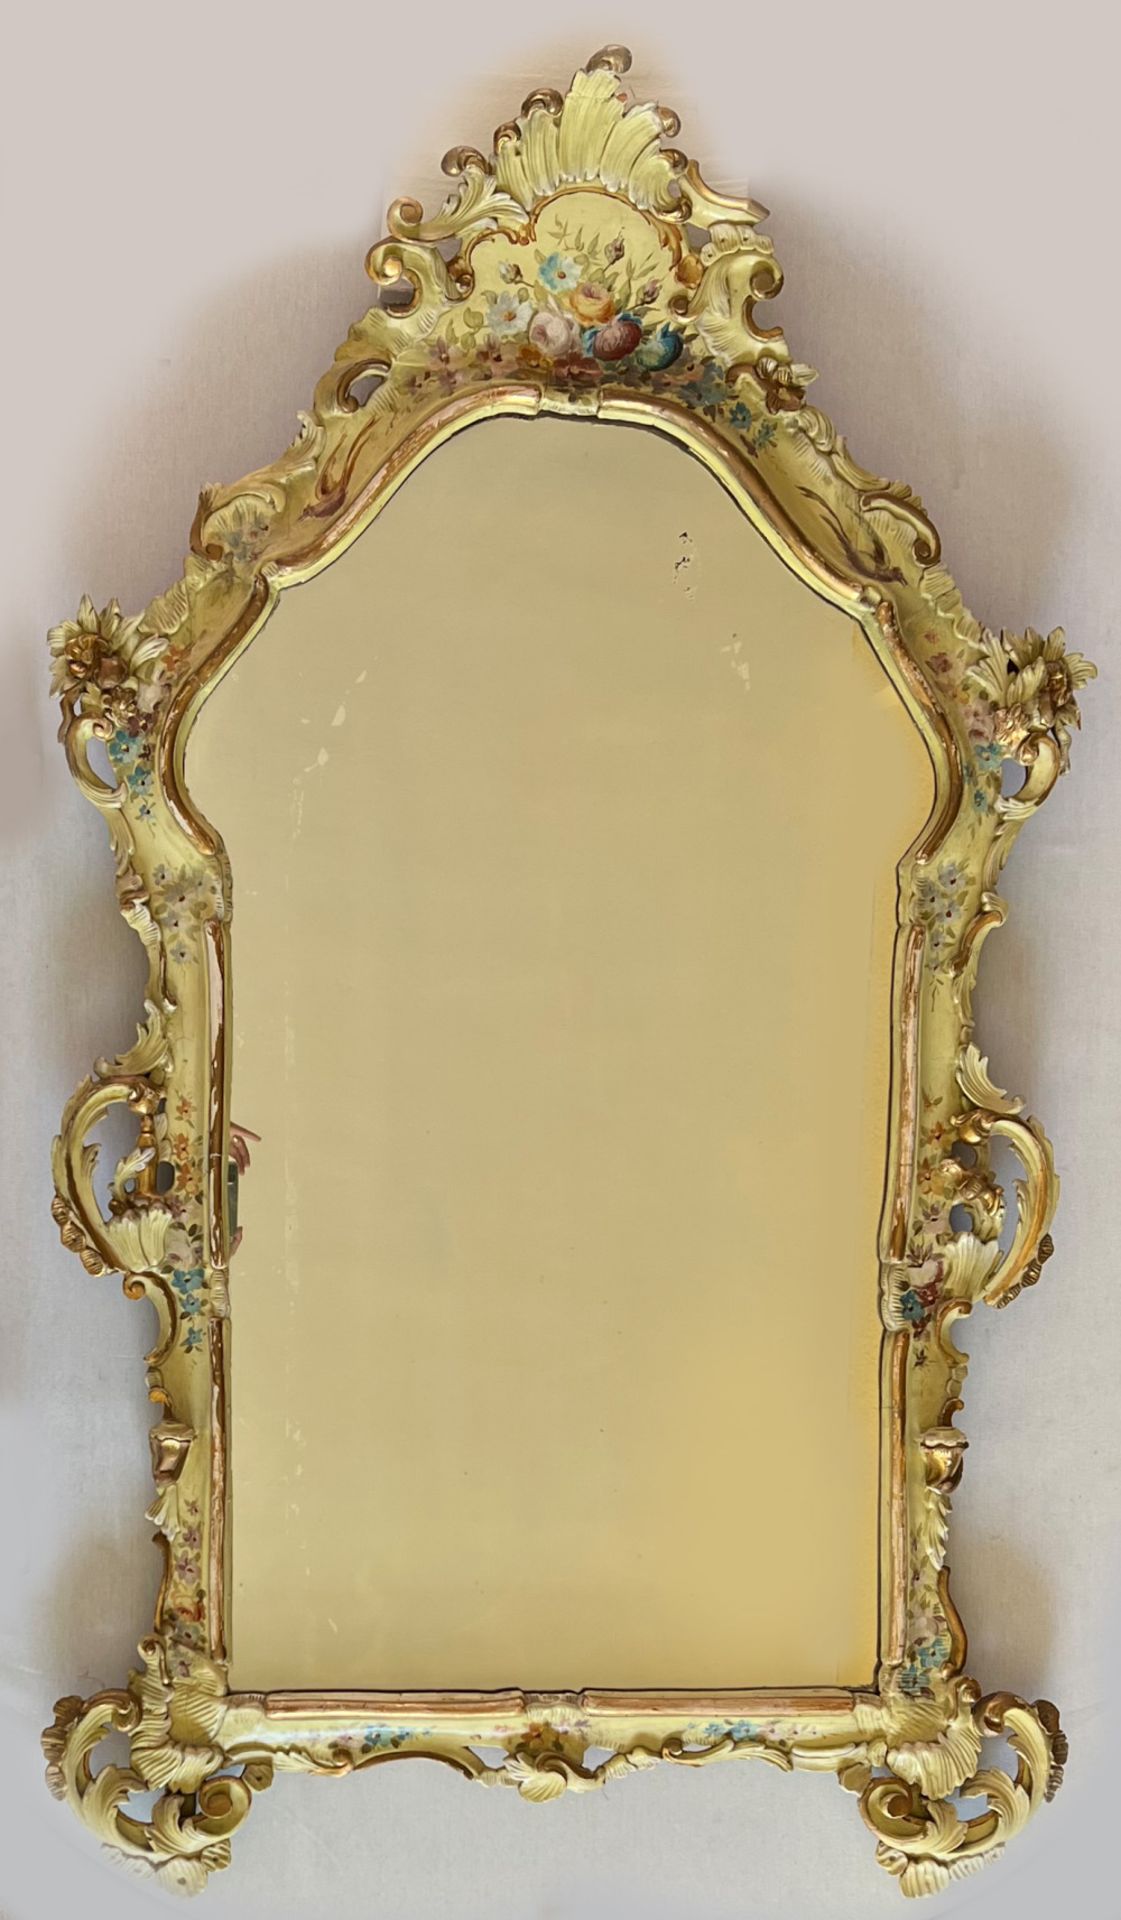 Barockspiegel mit Floralmalerei, Holz, farbig gefasst, Schlossmöbel, Altersspuren, 190 x 107 cm.